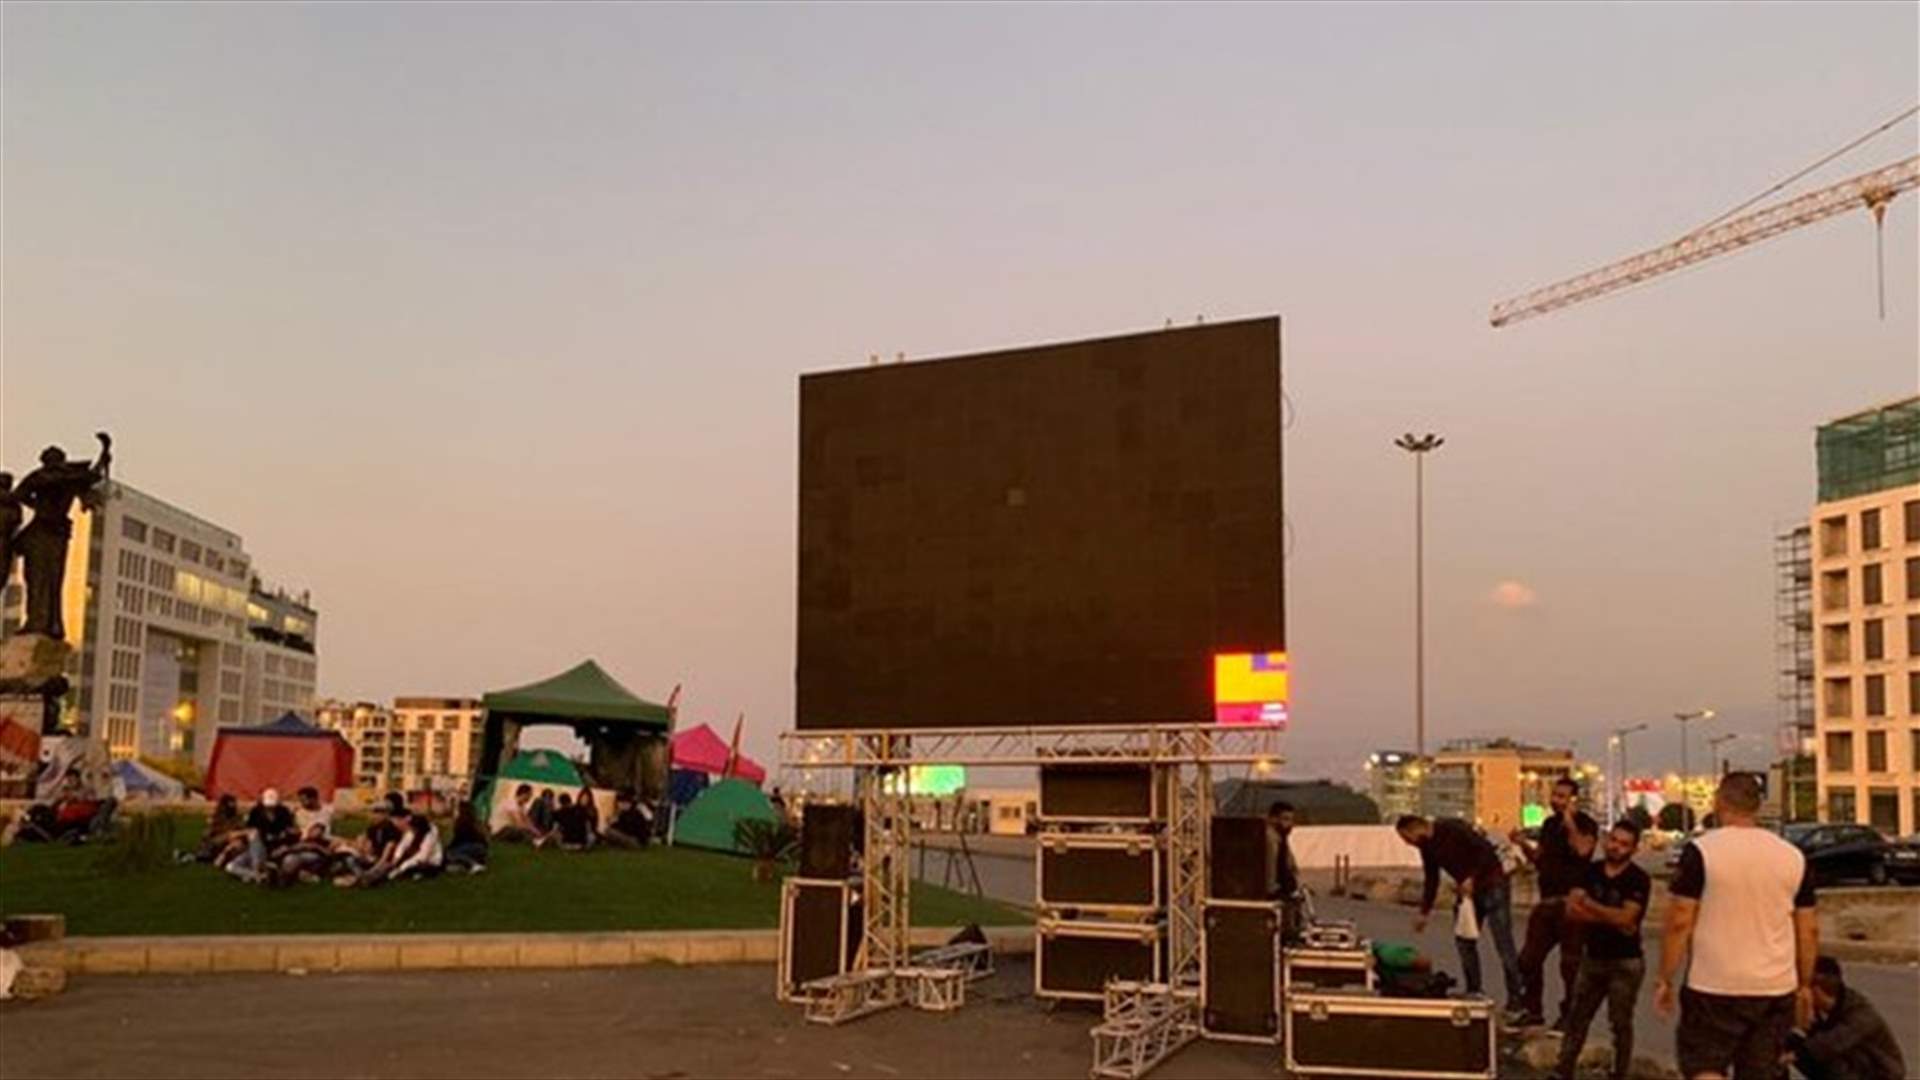 بيروت تتحضر لمشاهدة مباراة لبنان وكوريا الشمالية على شاشات كبيرة (فيديو)